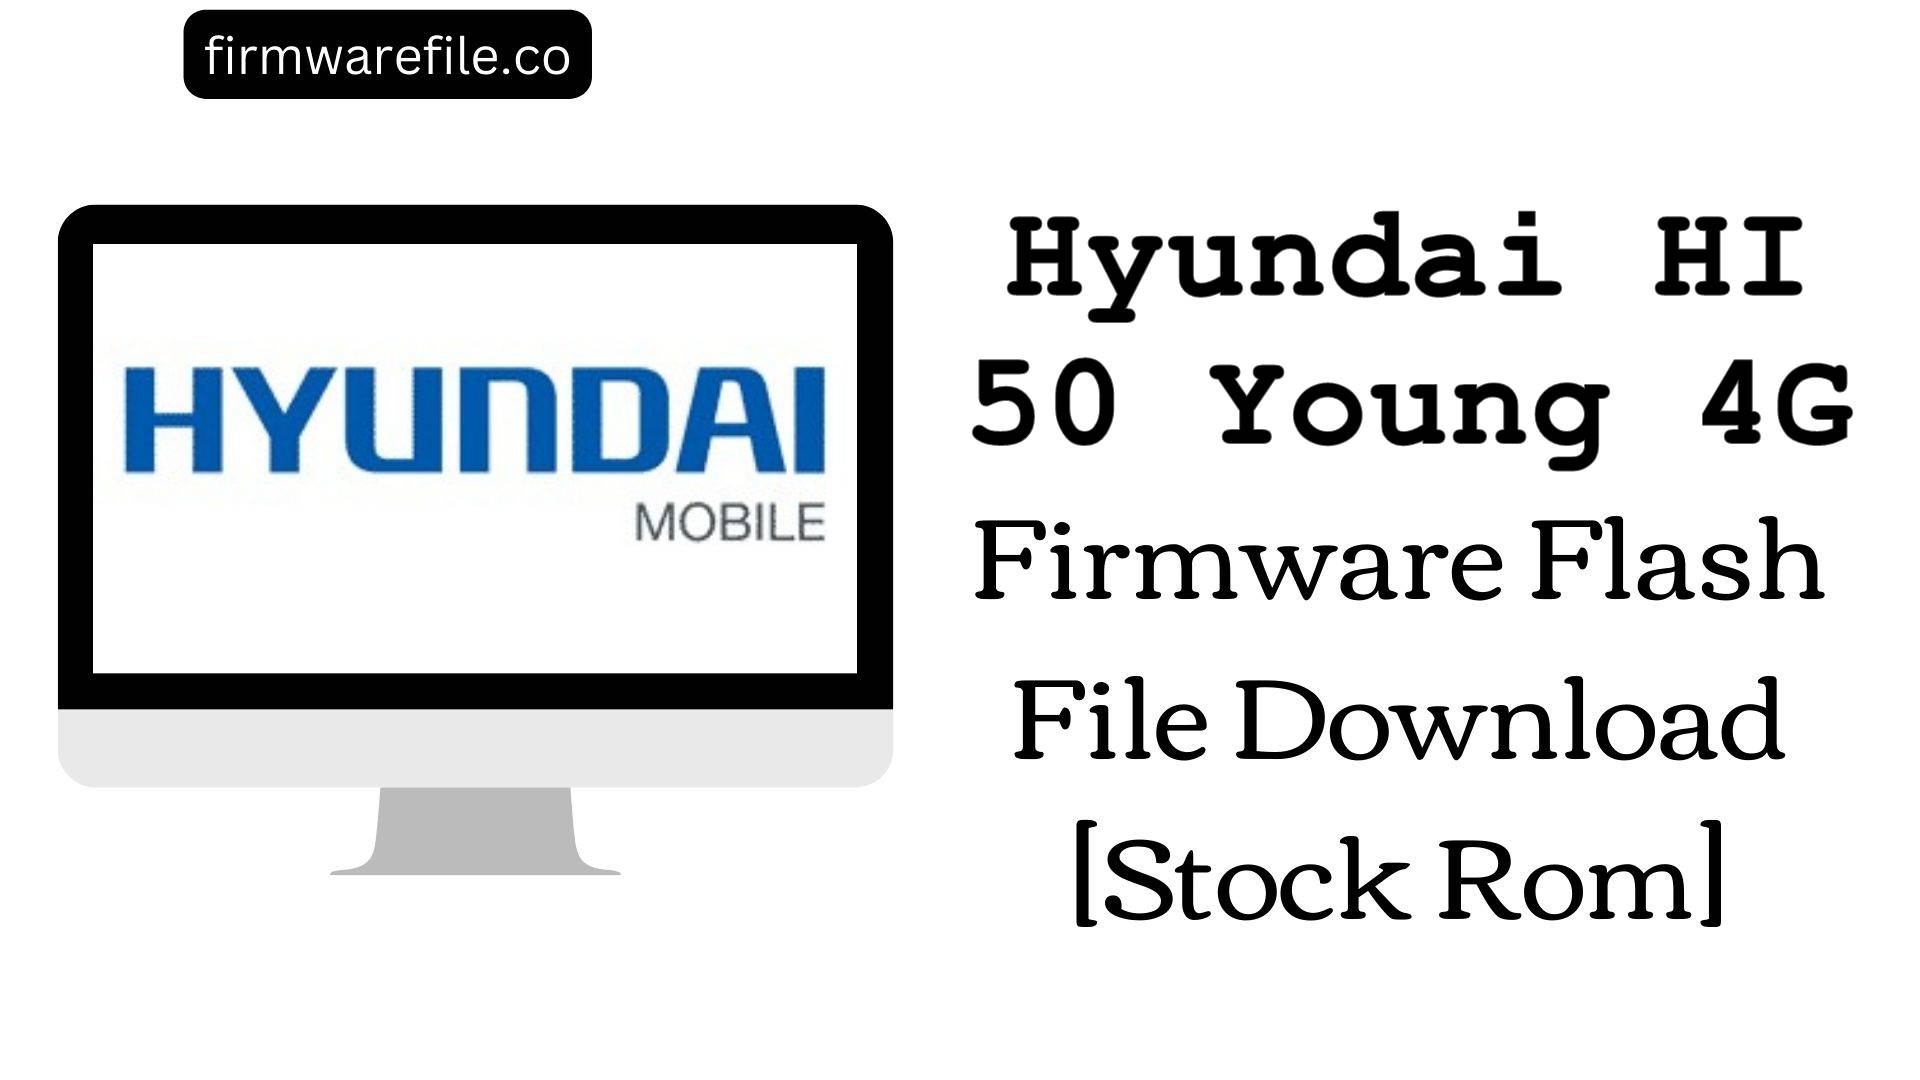 Hyundai HI 50 Young 4G